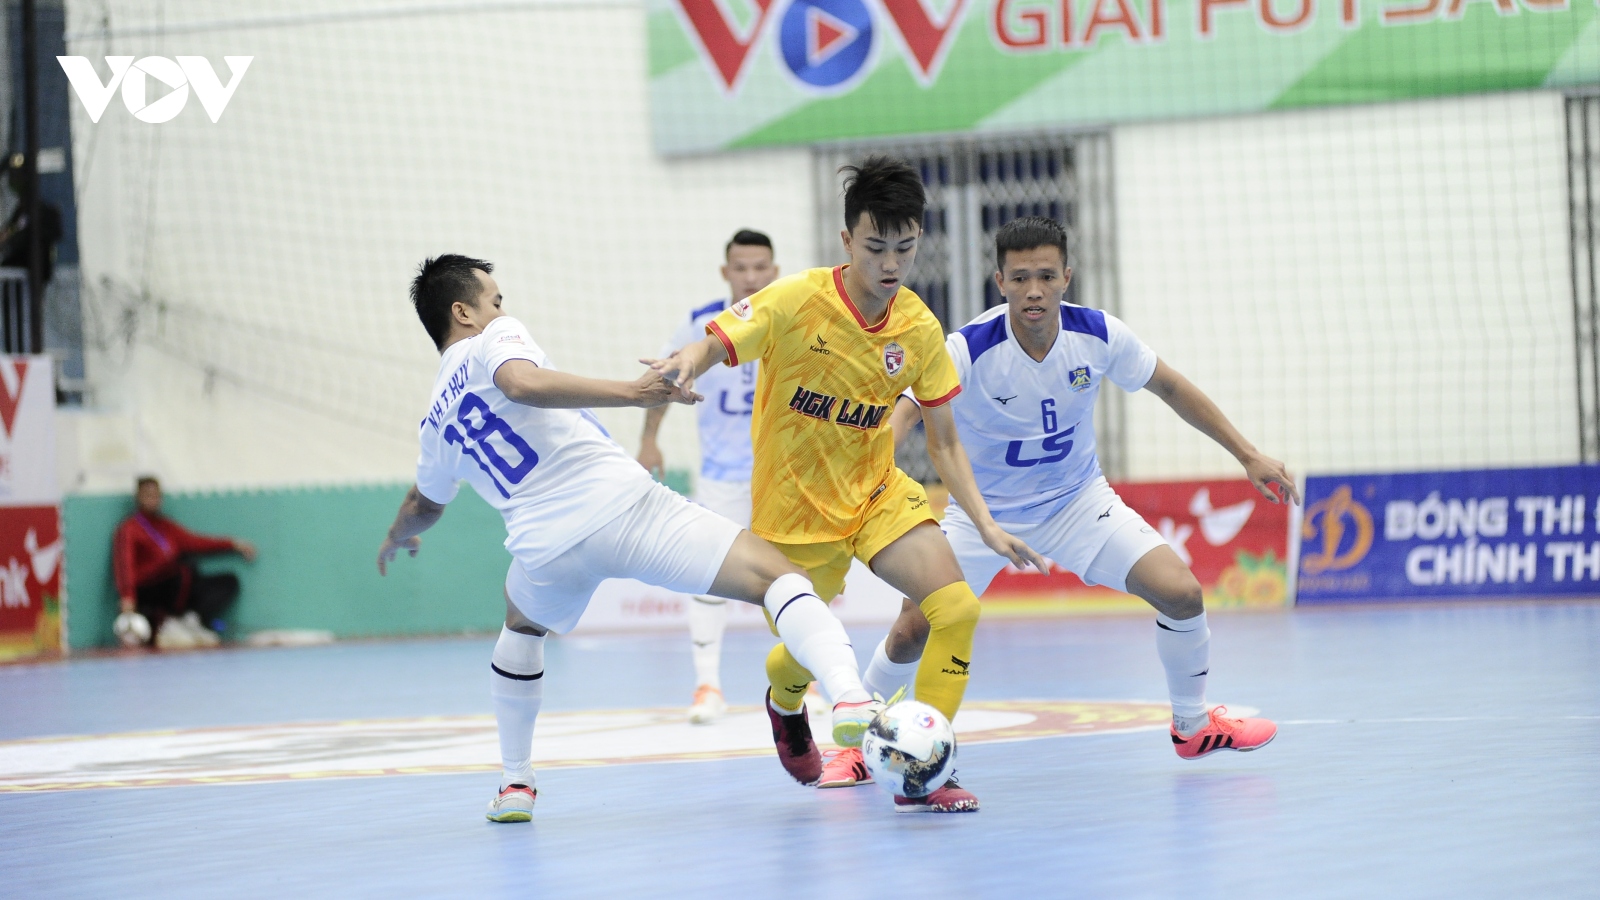 Giải Futsal HDBank VĐQG 2022: Thái Sơn Nam đại thắng Đắk Lắk